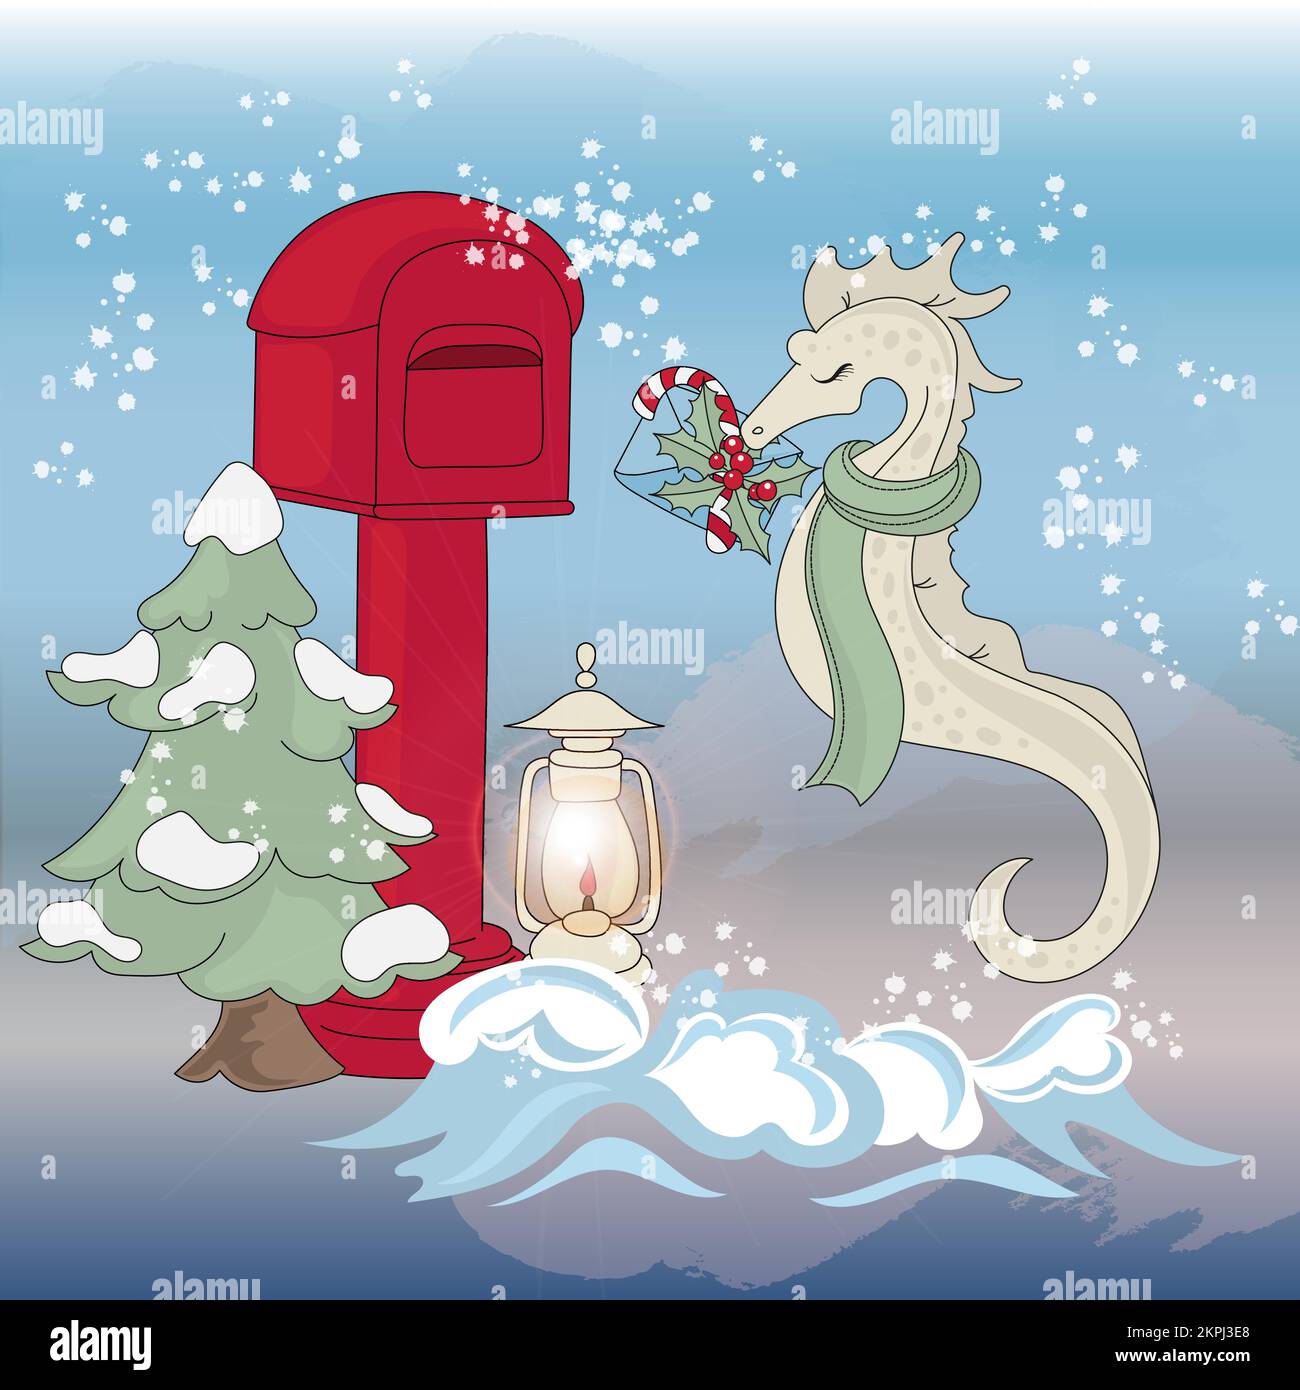 SEEPFERDCHEN-POST Unterwasser Ozeantier wirft einen Grußbrief in Einen Briefkasten Frohe Weihnachten Neujahr Cartoon Clip Art Vector Illustration Set Fo Stock Vektor